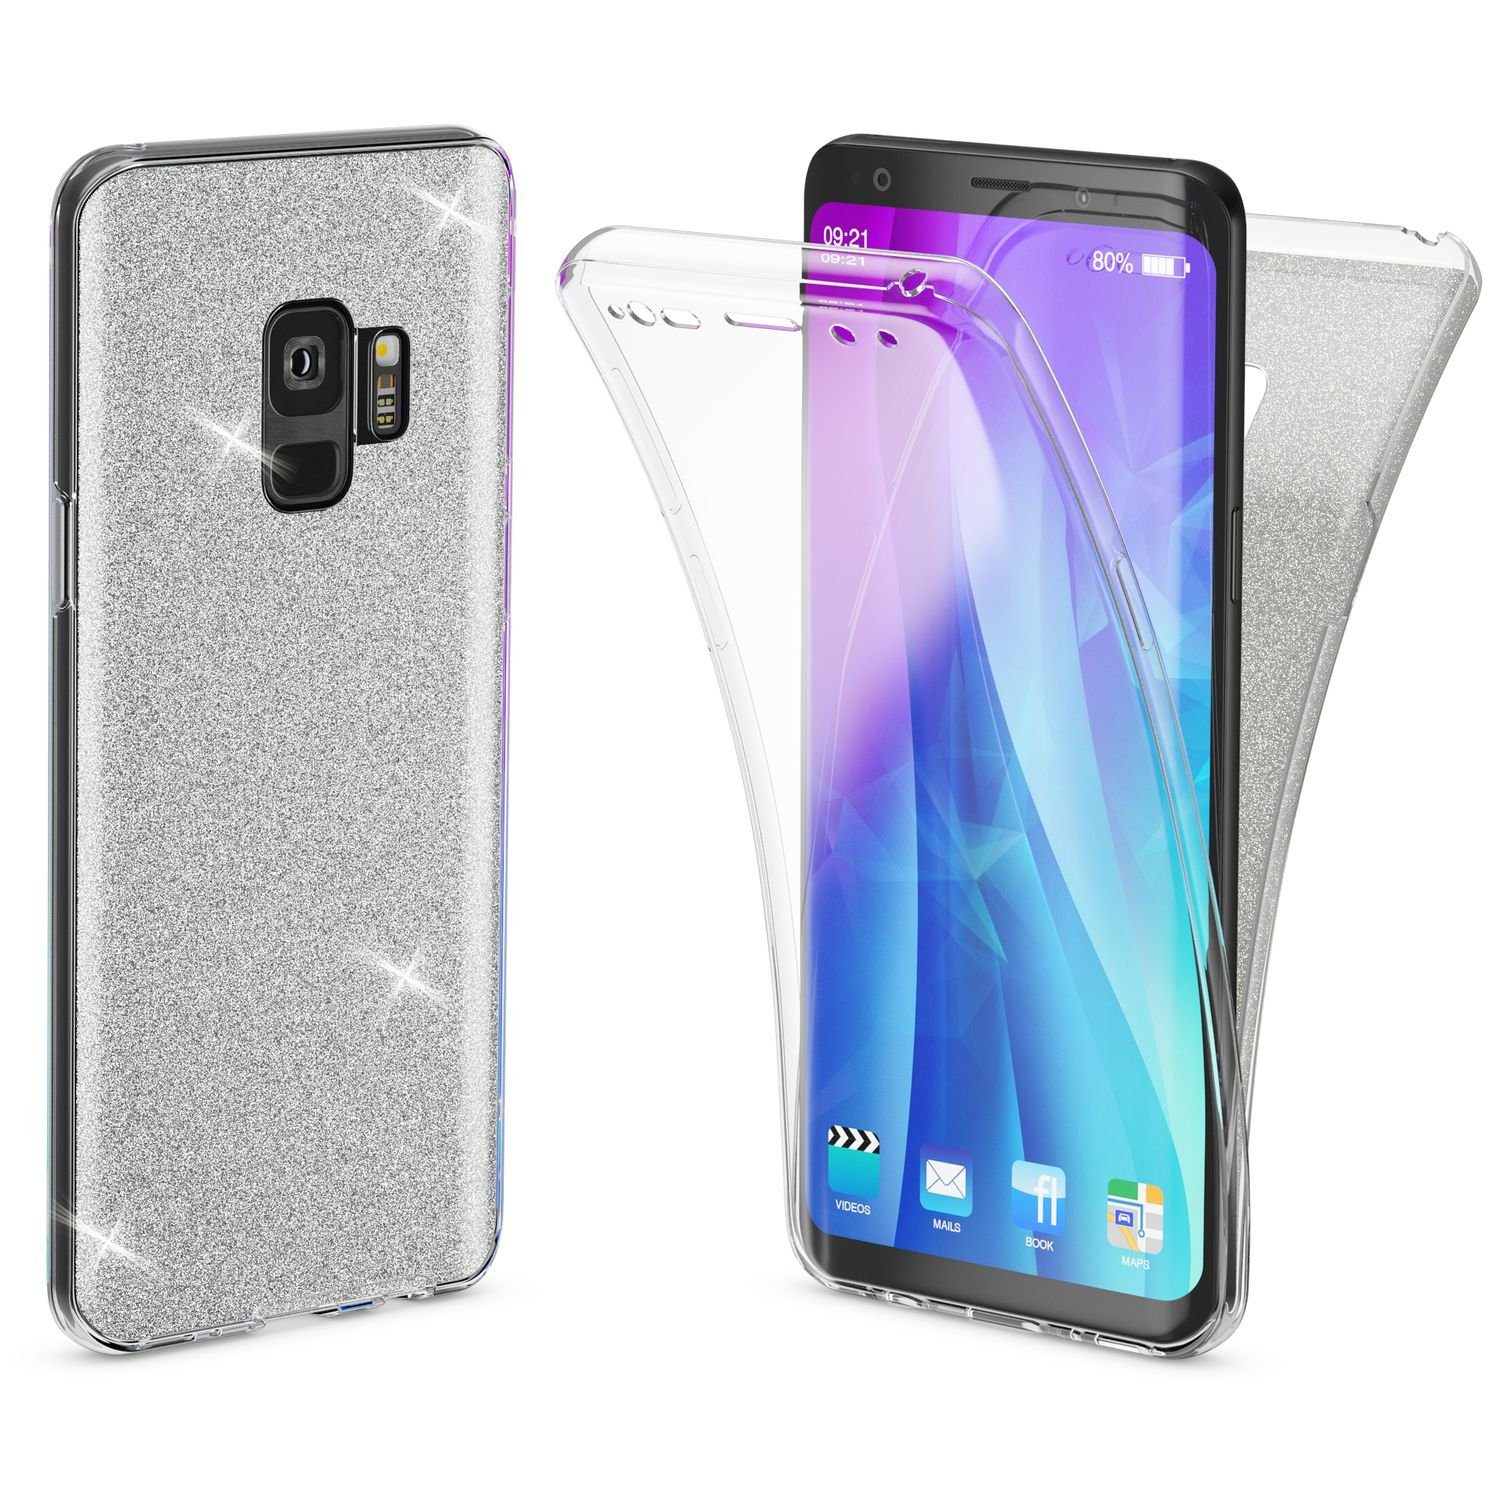 erhöhte Kante für Bildschirmschutz zweilagig weiche Handyhülle matt Gelb ONEFLOW Soft Case kompatibel mit Samsung Galaxy A51 Hülle aus Silikon